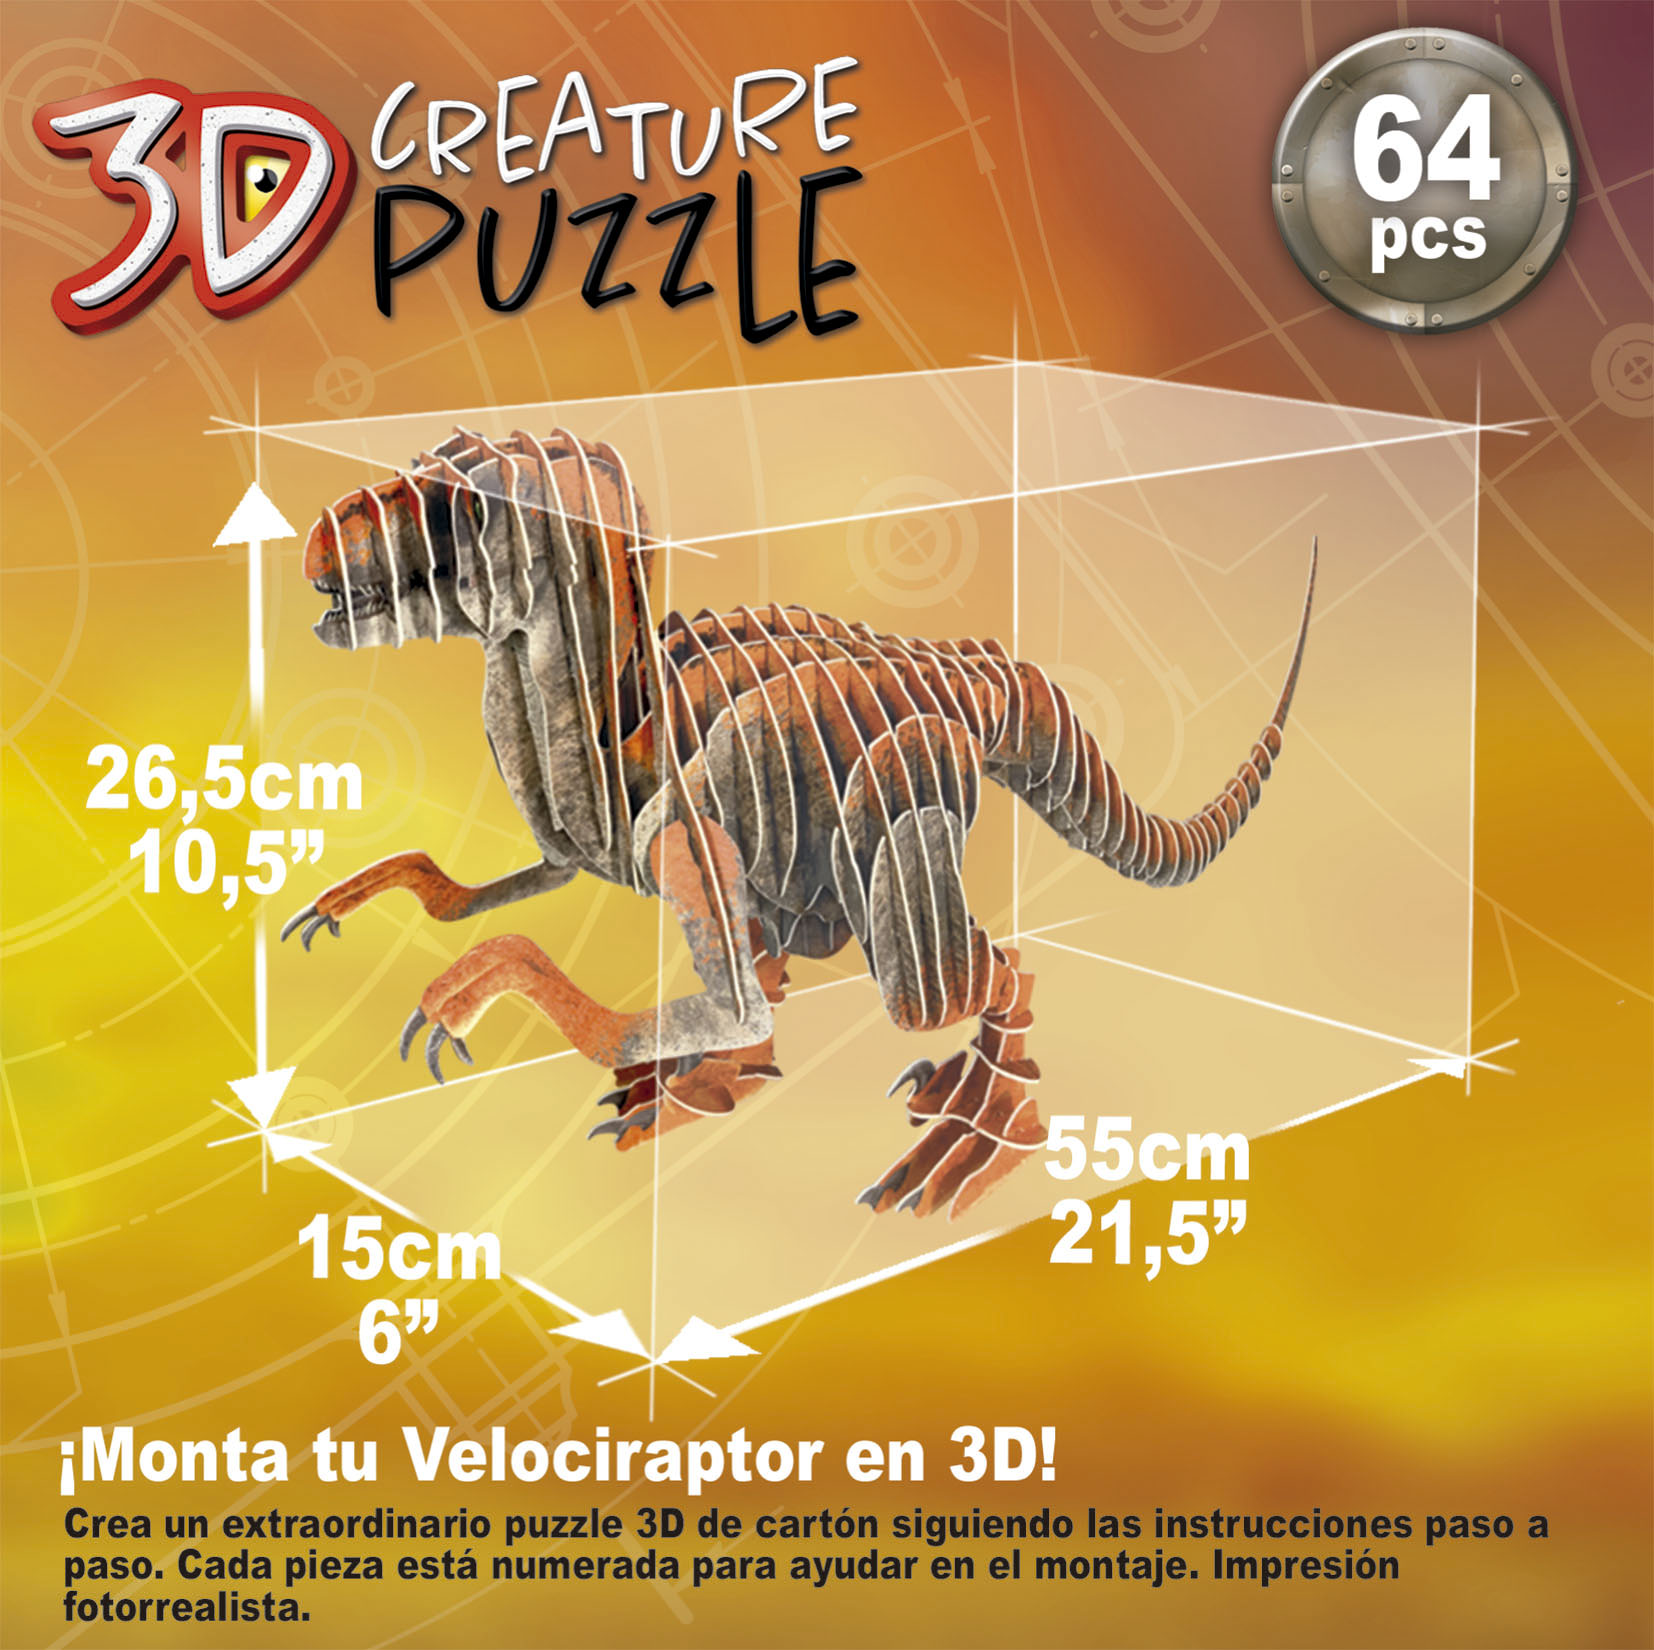 Velociraptor 3D Creature Puzzle - Educa Borras